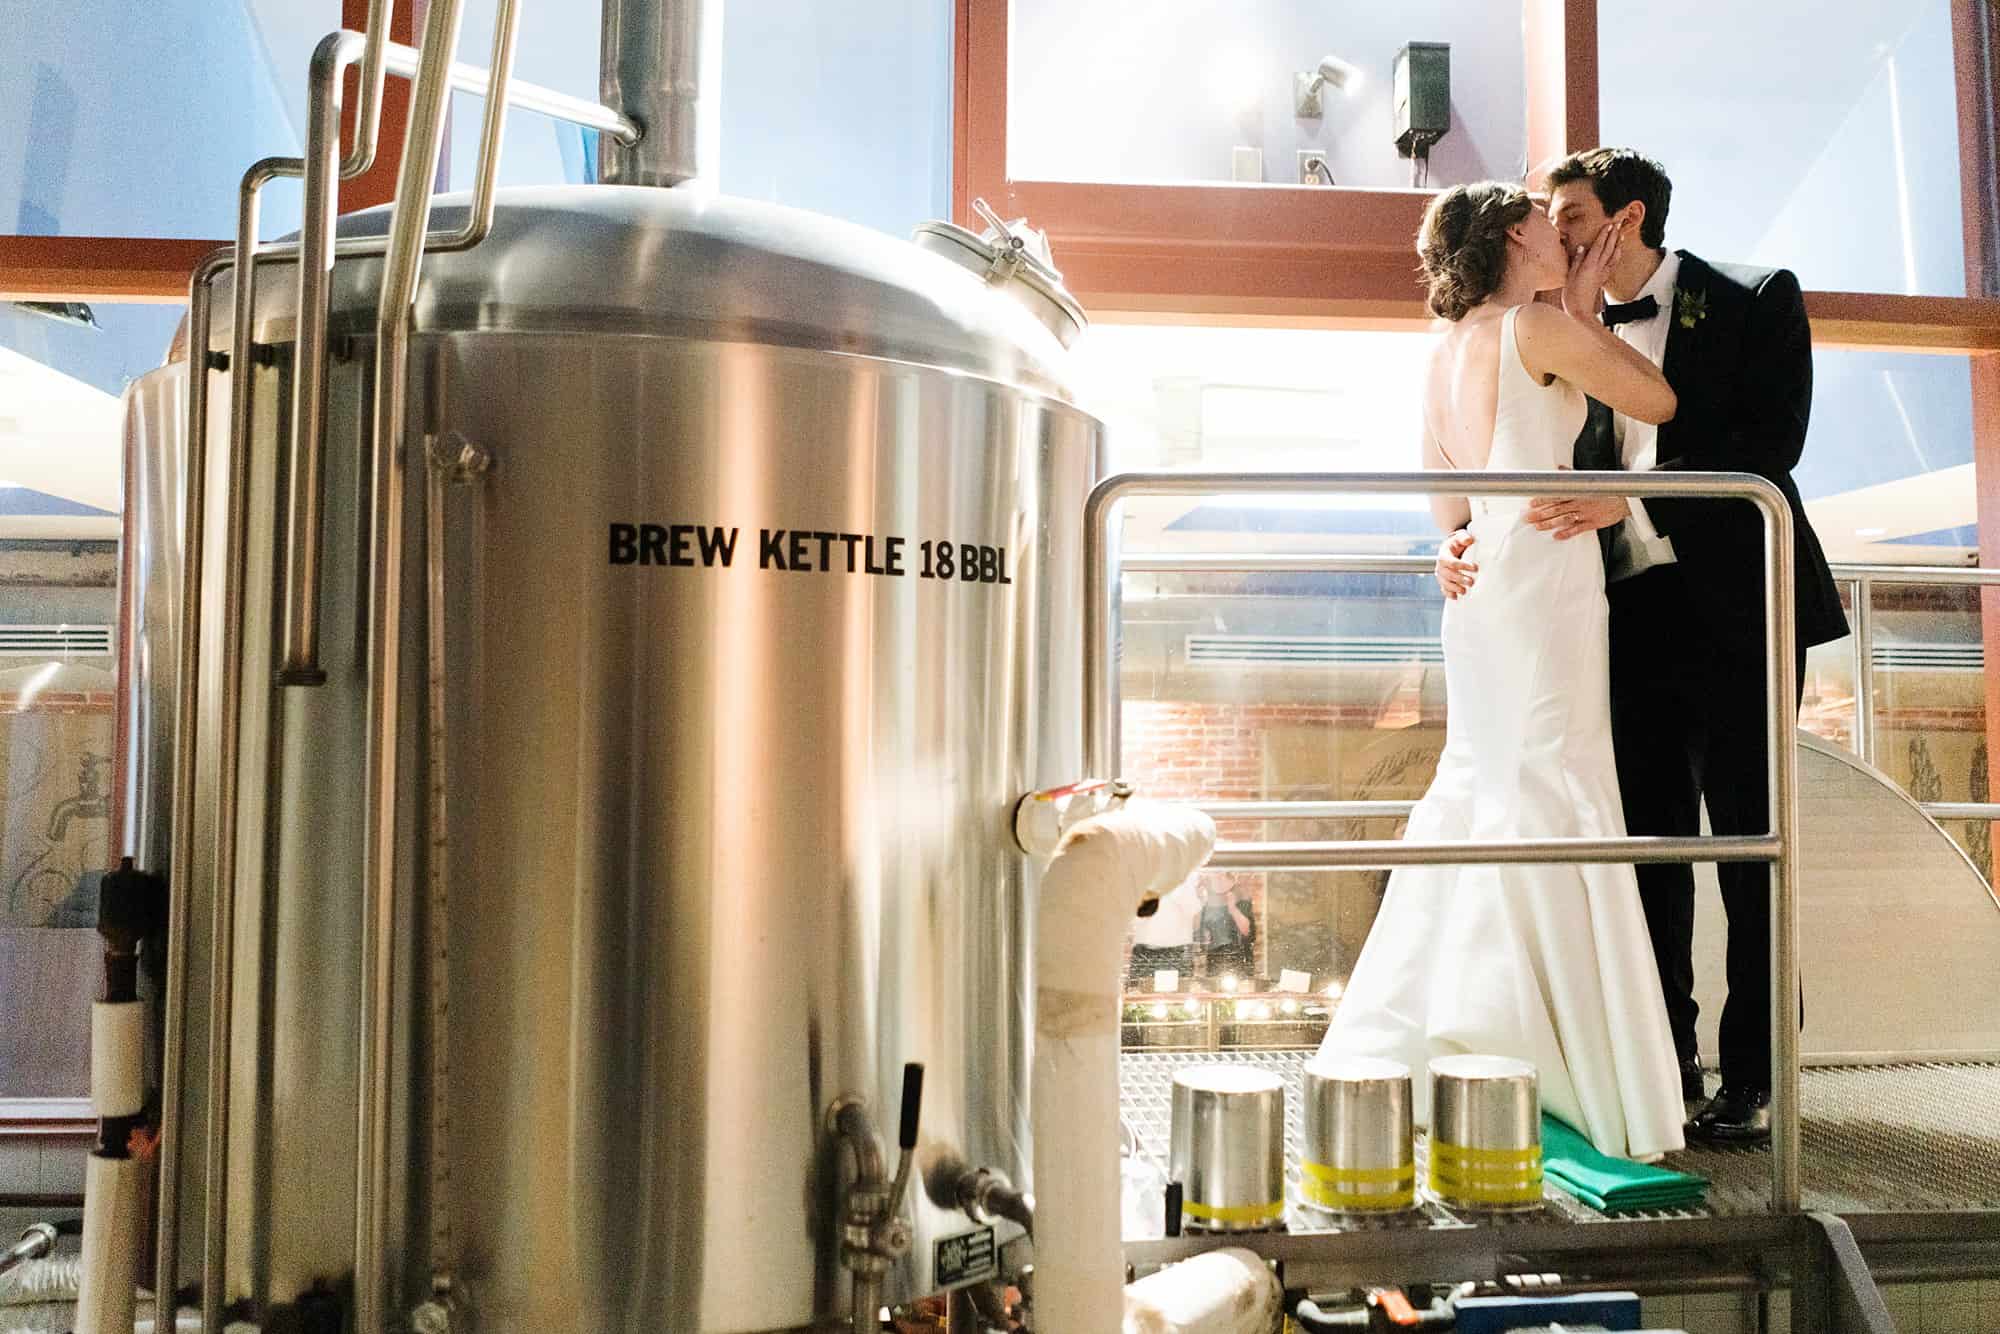 triumph brewery wedding steps cylo bride and groom silo nj princeton unique foodie gormet kiss reception venue